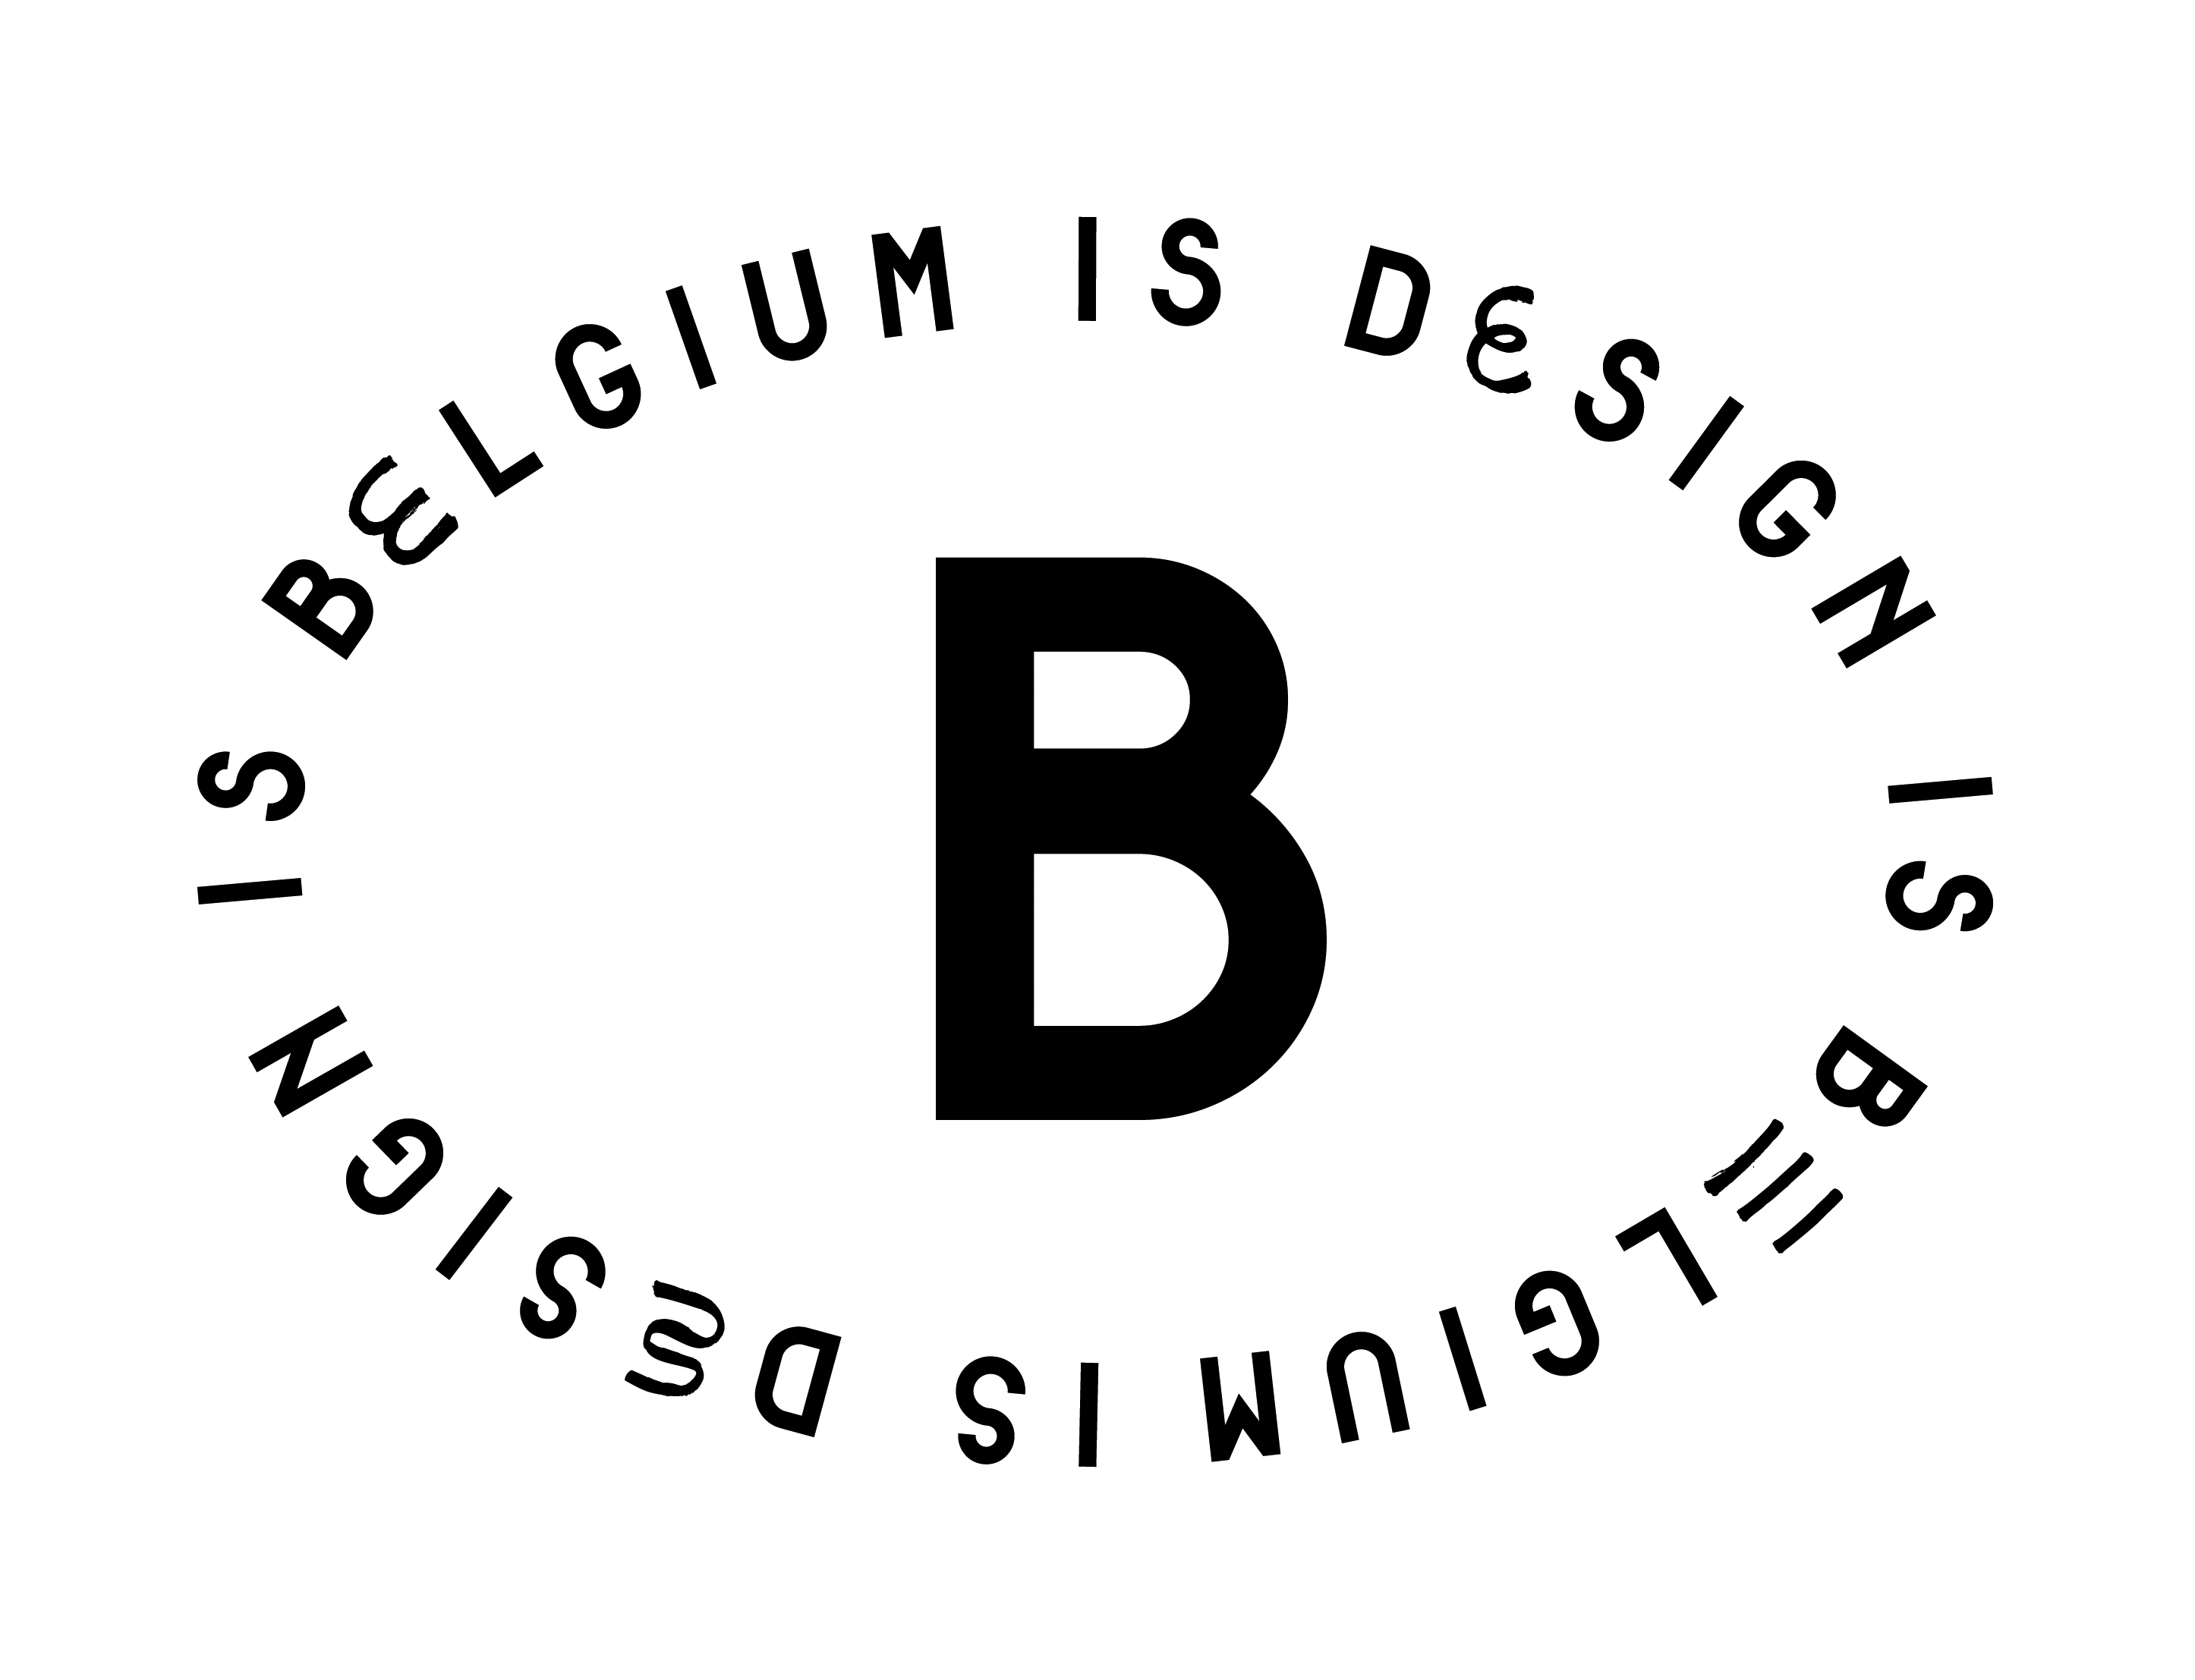 Belgium is Design is een initiatief van Flanders DC, MAD Brussels en Wallonie-Bruxelles Design Mode (WBDM) en heeft sinds 2011 als doel Belgisch design internationaal te promoten.